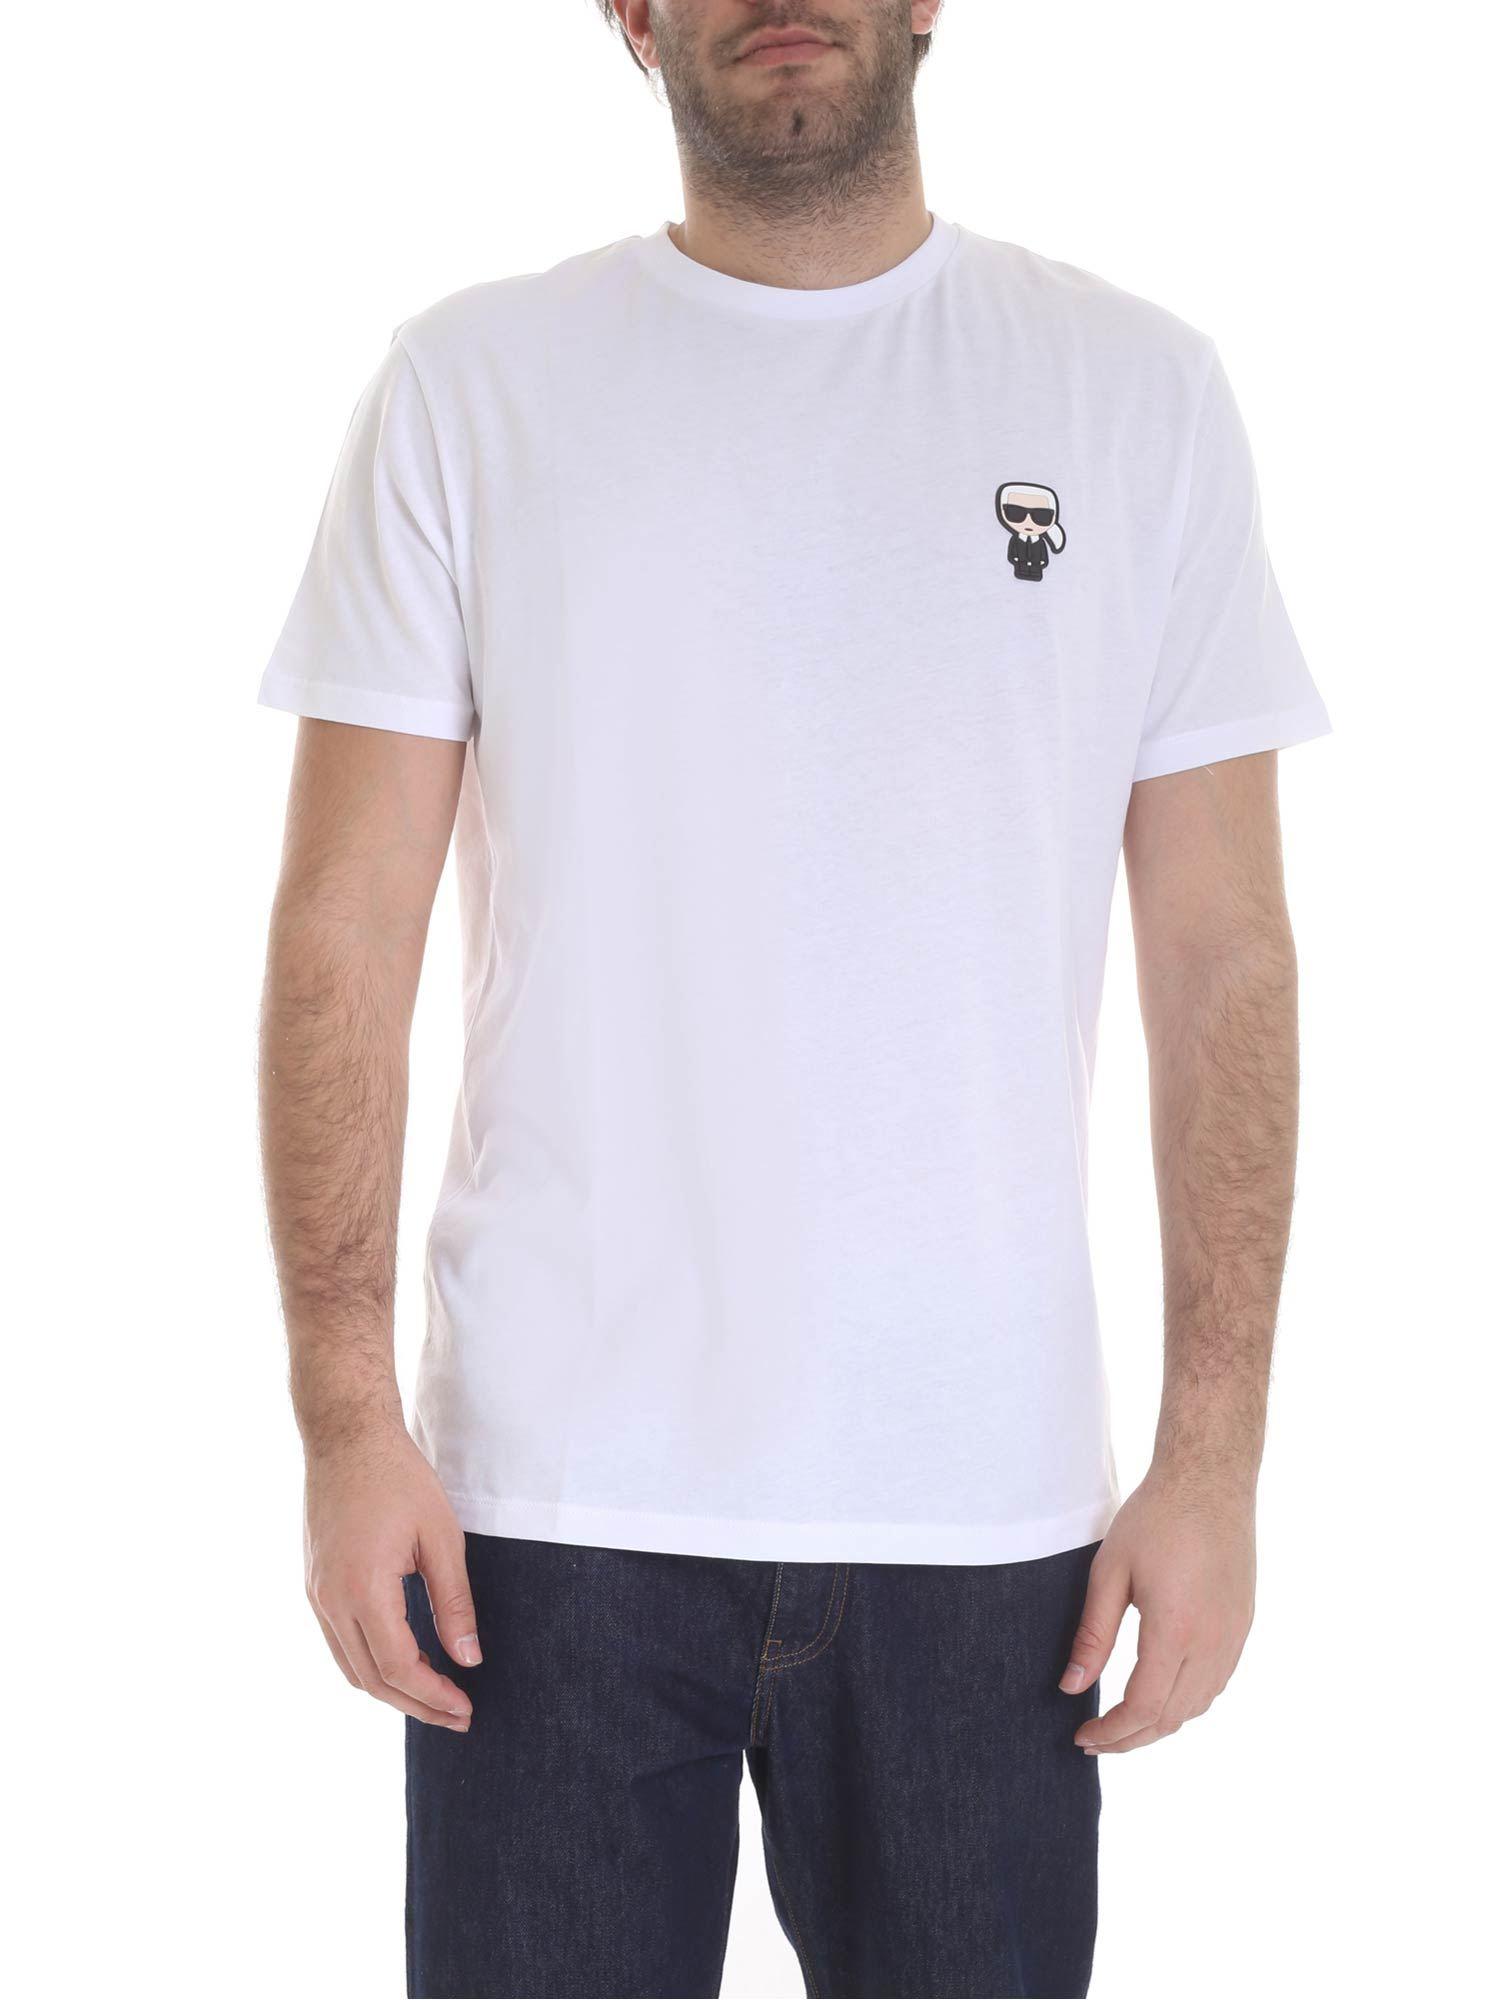 Karl Lagerfeld K Ikonik White T-shirt in White for Men - Lyst